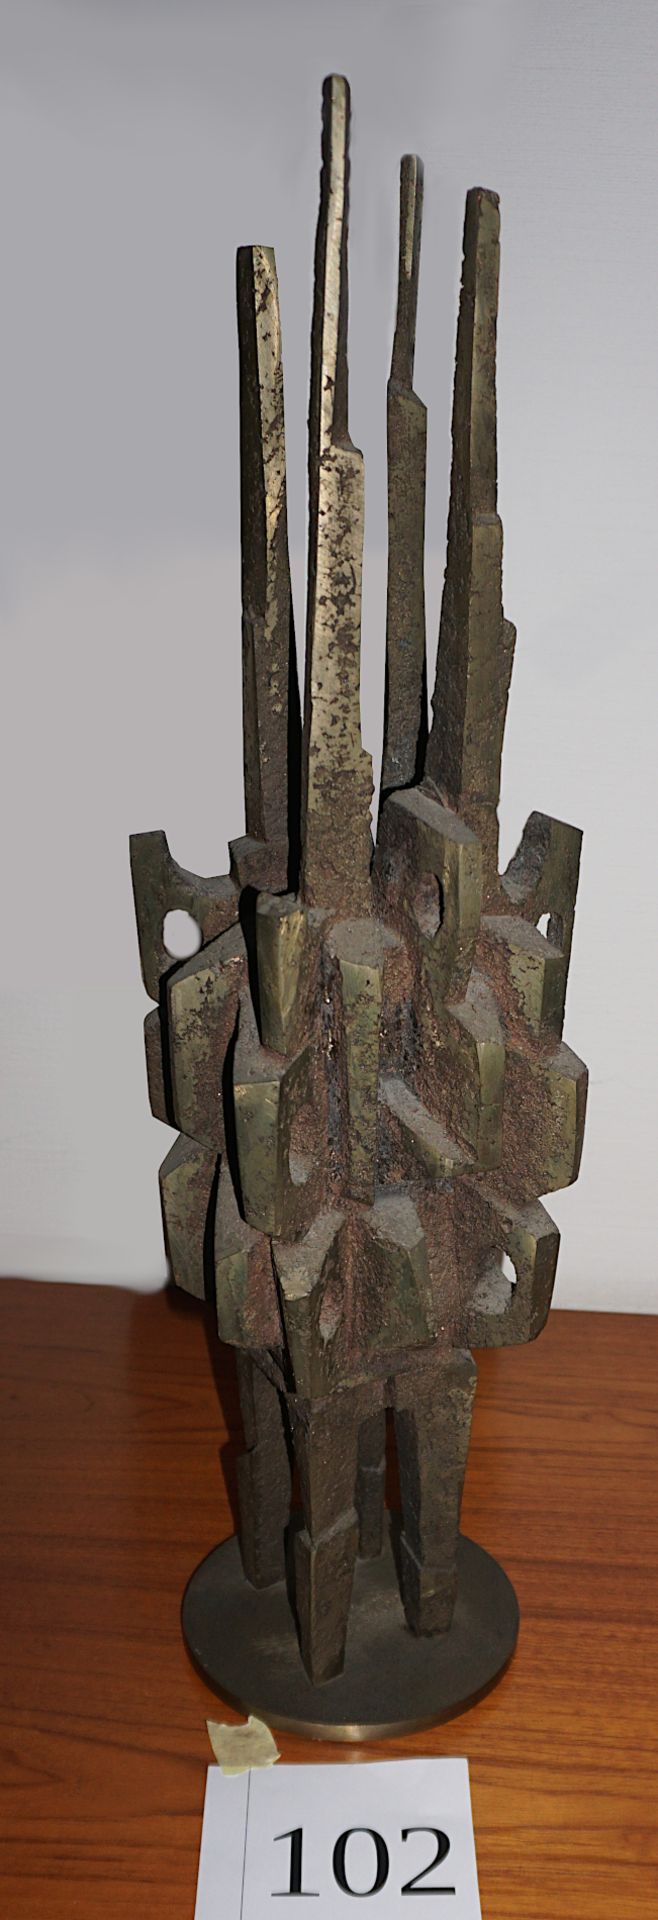 1 Bronzeskulptur "Hochstrebende Form" von Hubert WEBER, 1979, H ca. 59cm, Asp.